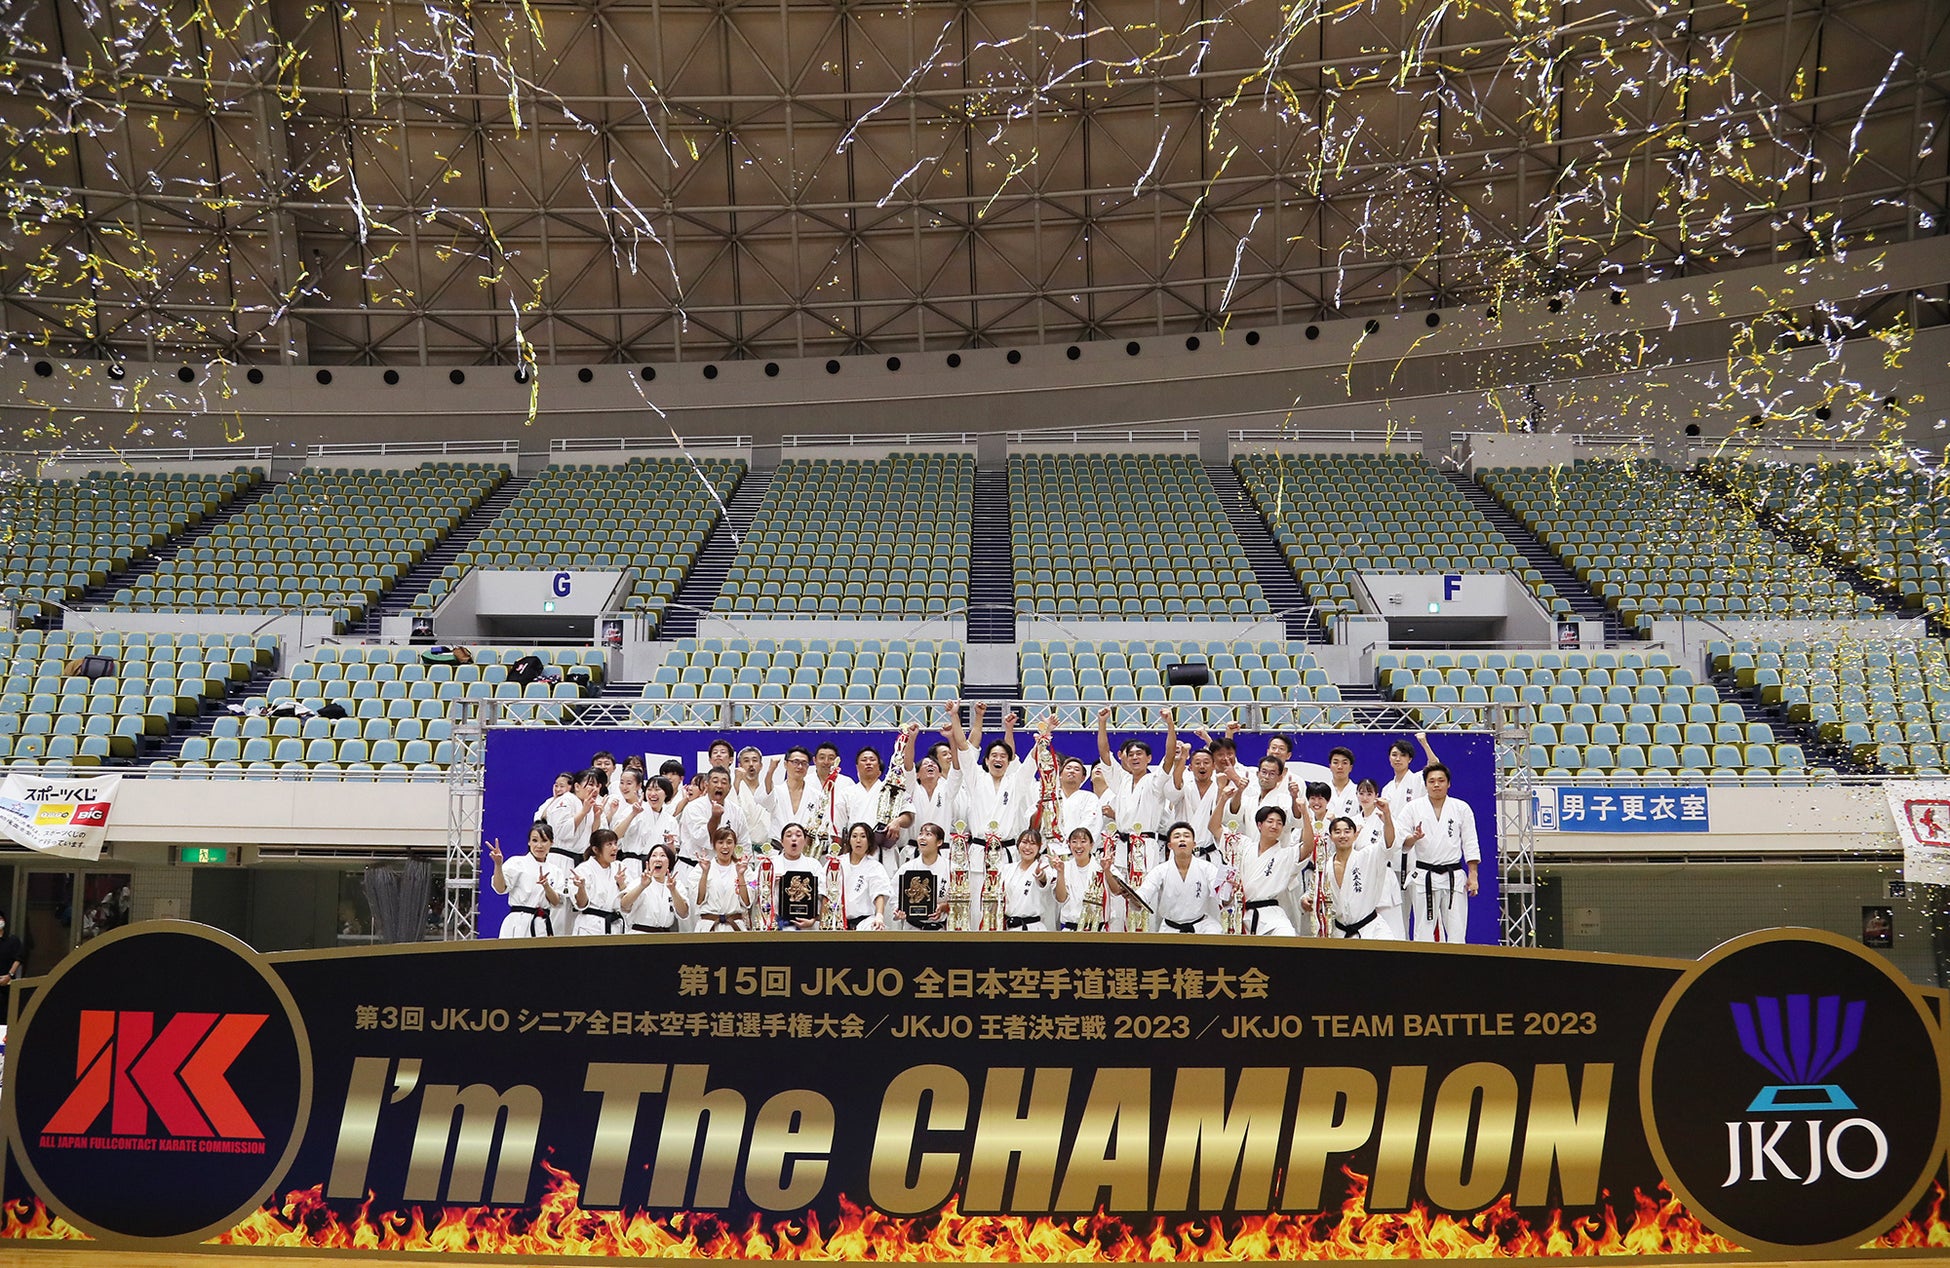 【大会結果】「第15回JKJO全日本空手道選手権大会」「第3回JKJO全日本シニア空手道選手権大会」